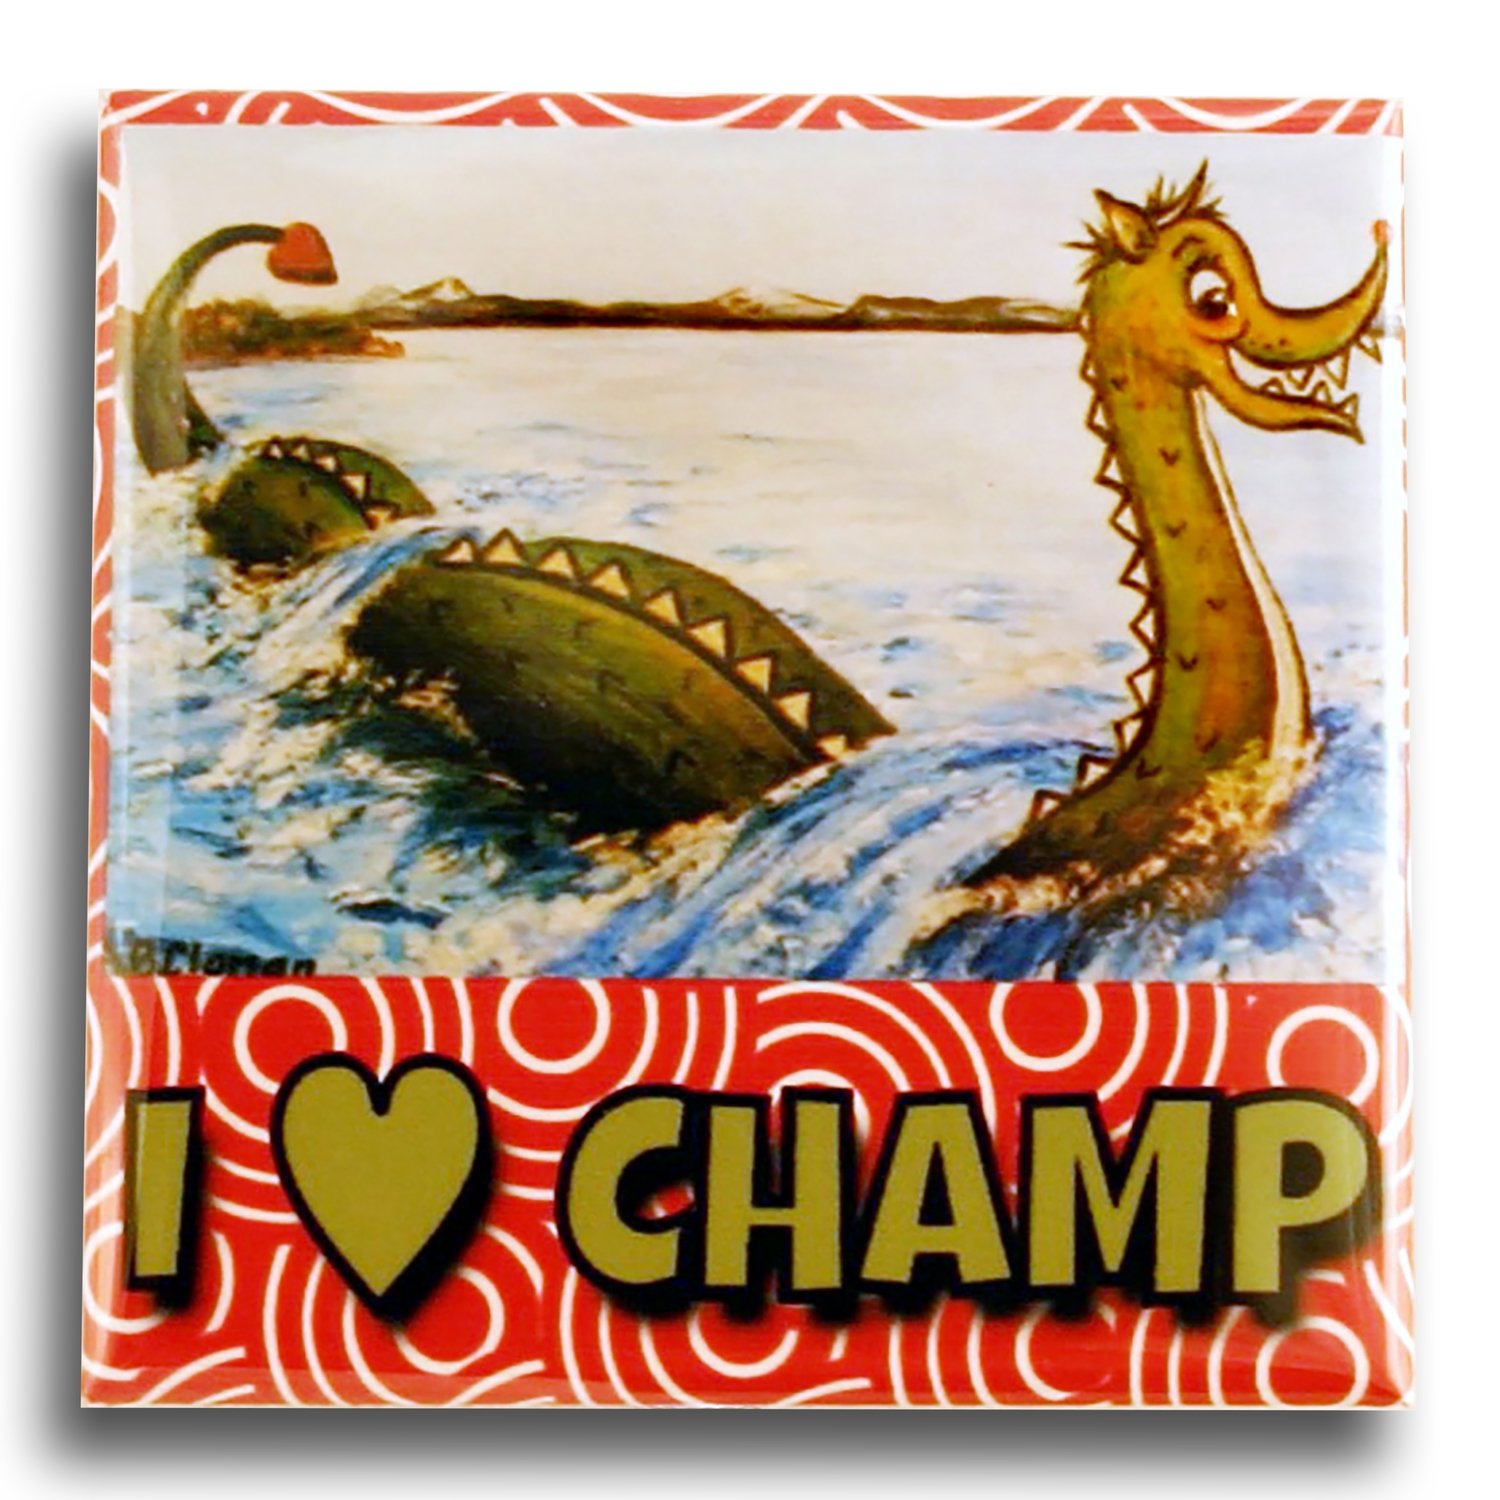 Clonan Champ – I Heart Champ 2” Square Button